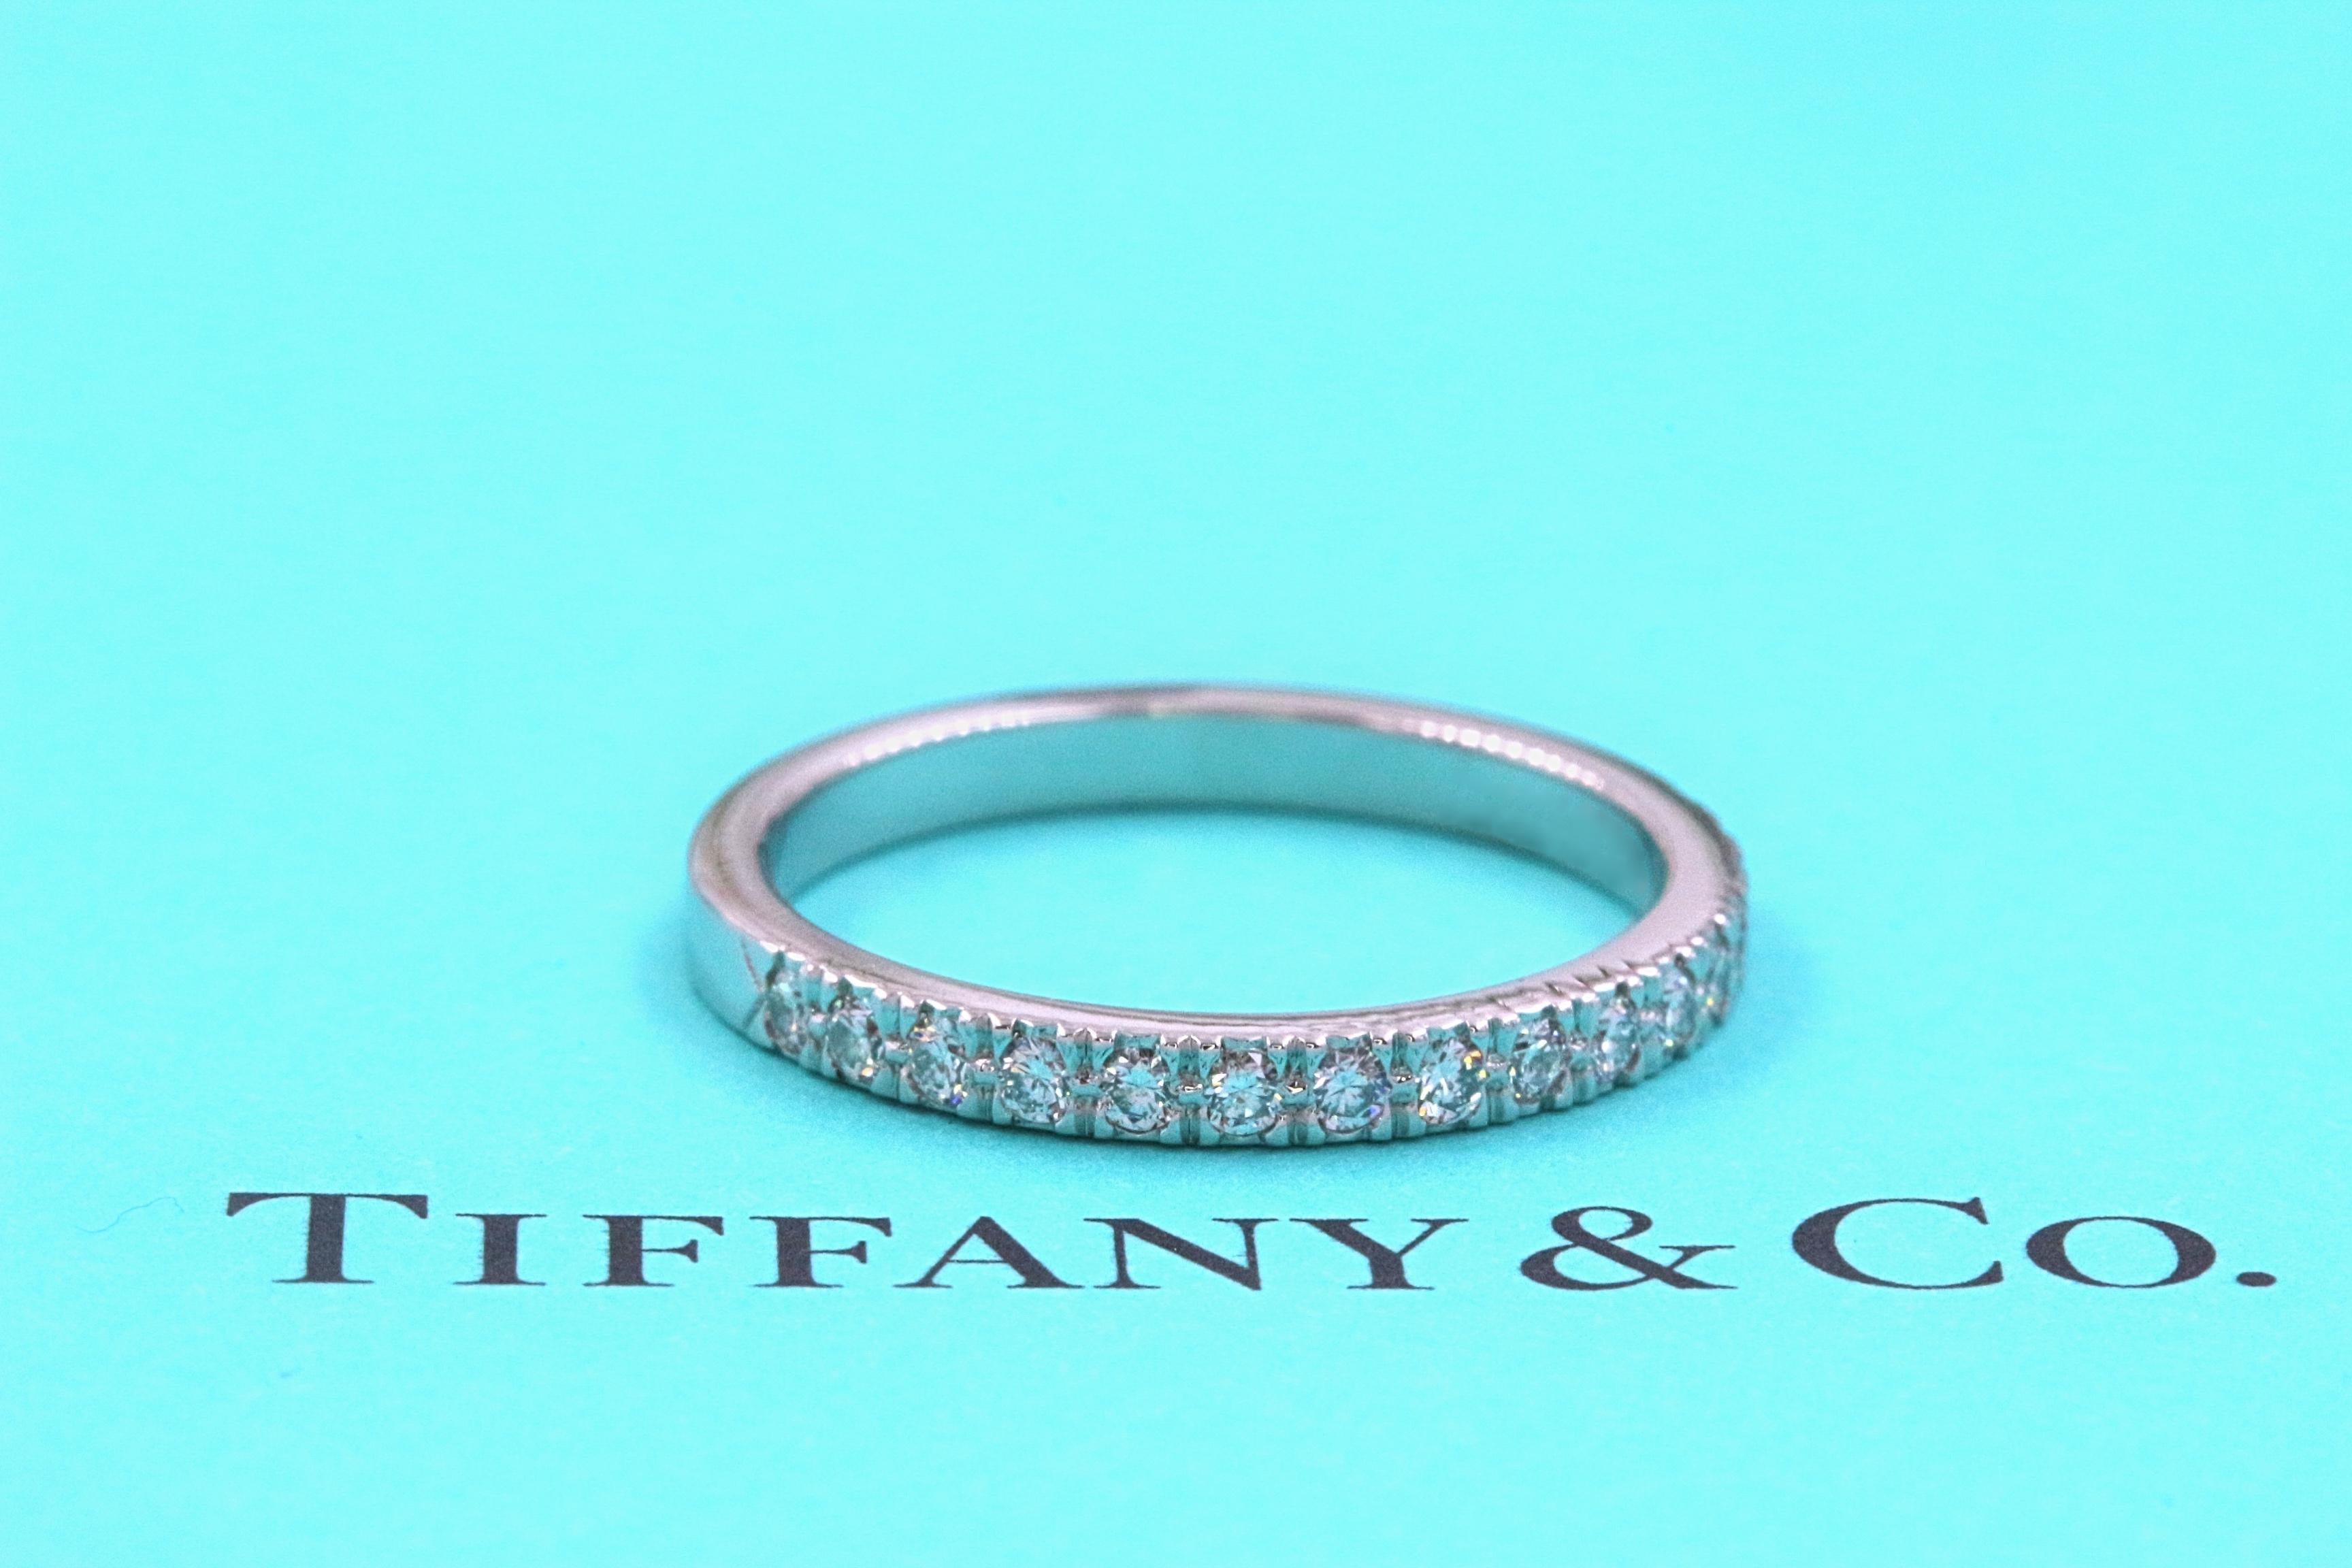 Tiffany & Co.

Stil:  NOVO Halbkreis Diamant-Trauring
Metall:  PT950
Breite:  2 MM
Größe:  6 - ansehnlich
Karat Gesamtgewicht:  0,23 tcw
Diamant-Form:  Rund Brillant
Farbe und Reinheit des Diamanten:  Farbe F - G, Reinheit VS
Wahrzeichen: 